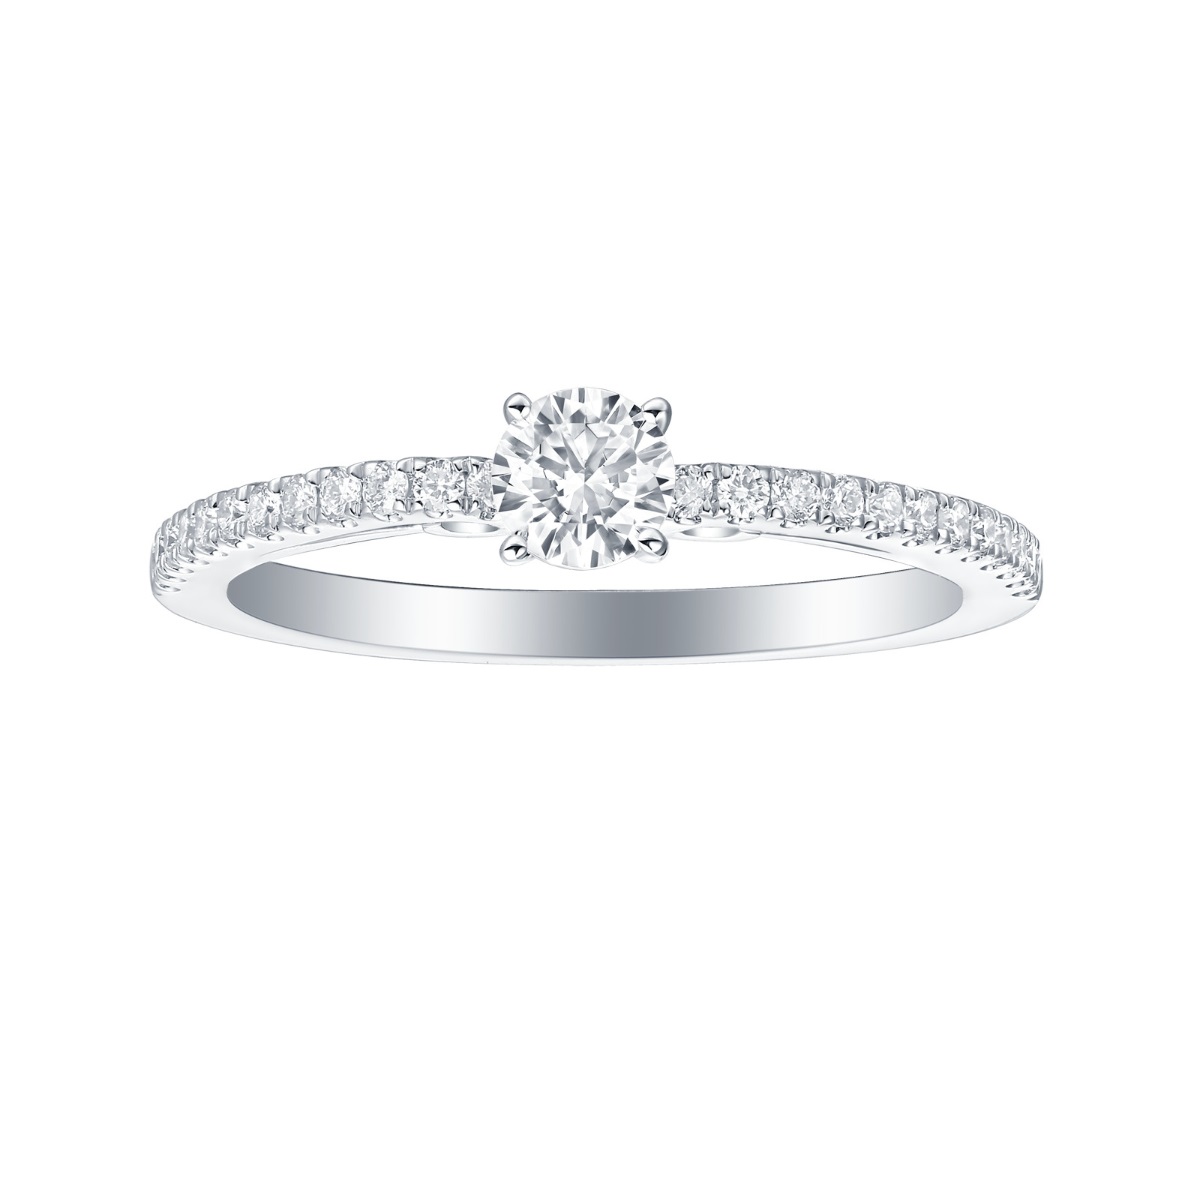 R35879WHT – 18K White Gold Diamond Ring, 0.71 TCW